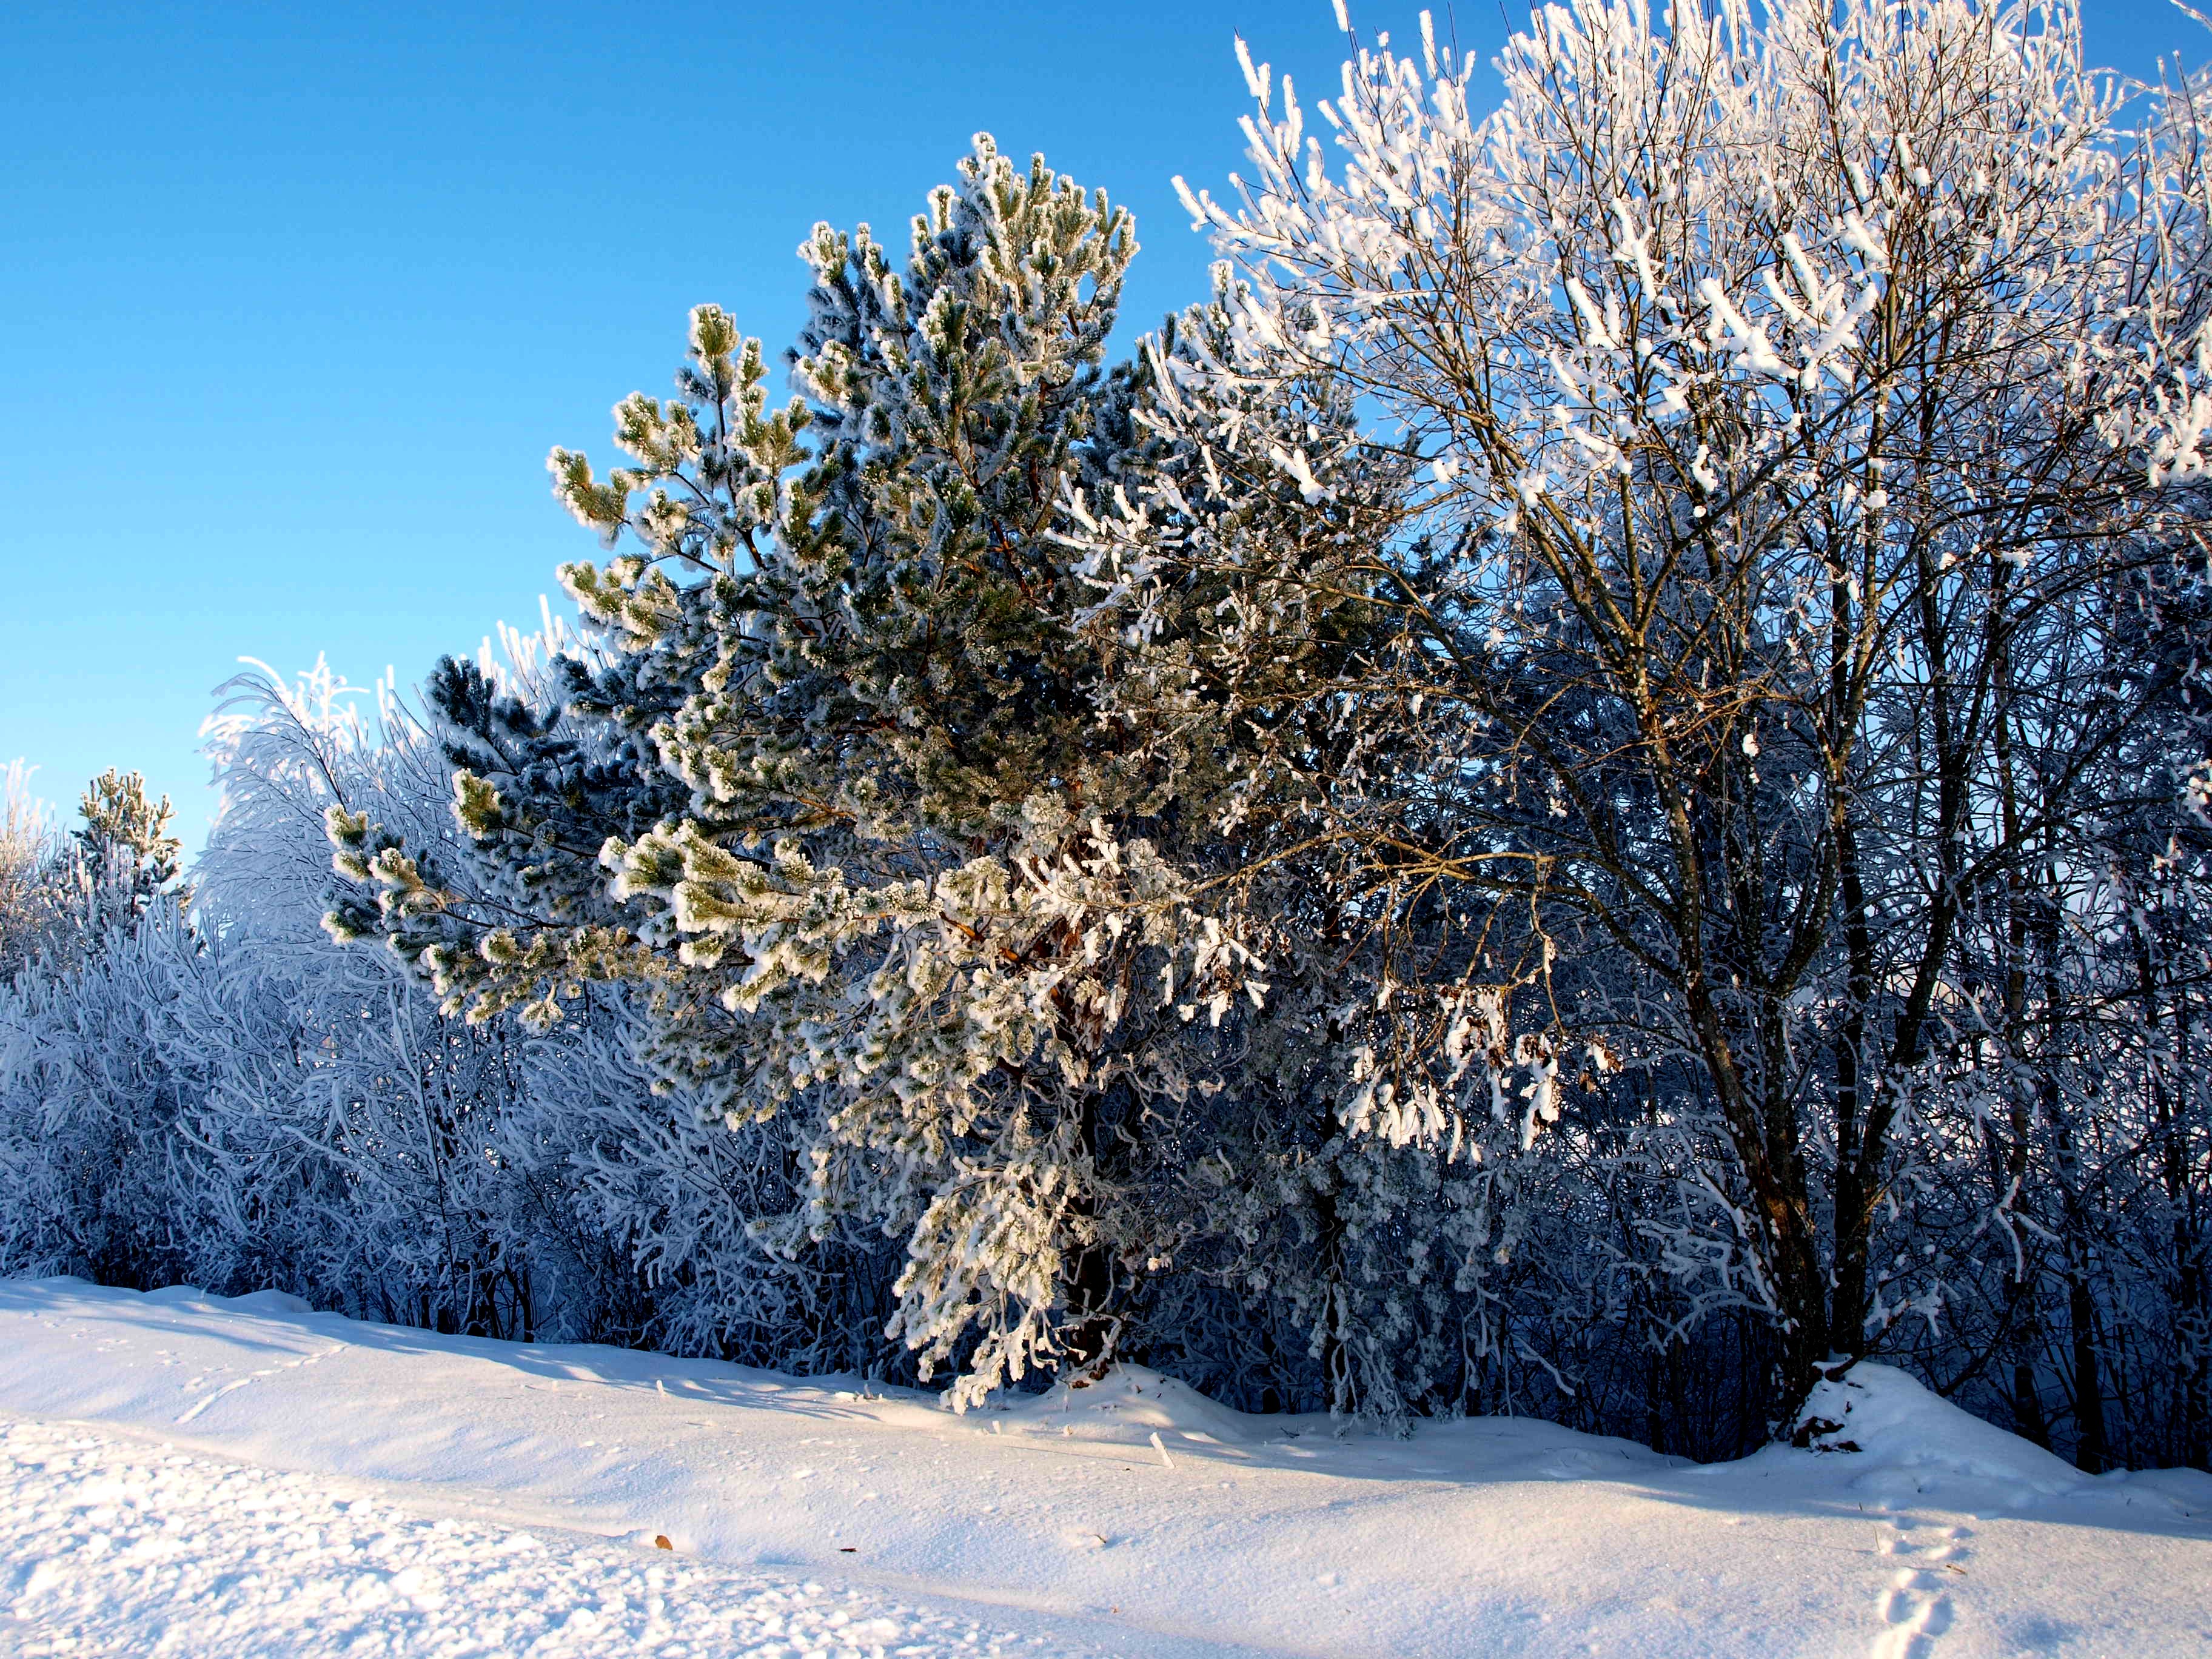 пейзажи, природа, зима, снег, деревья, белый, замороженный, Литва, ttic24 - обои на рабочий стол